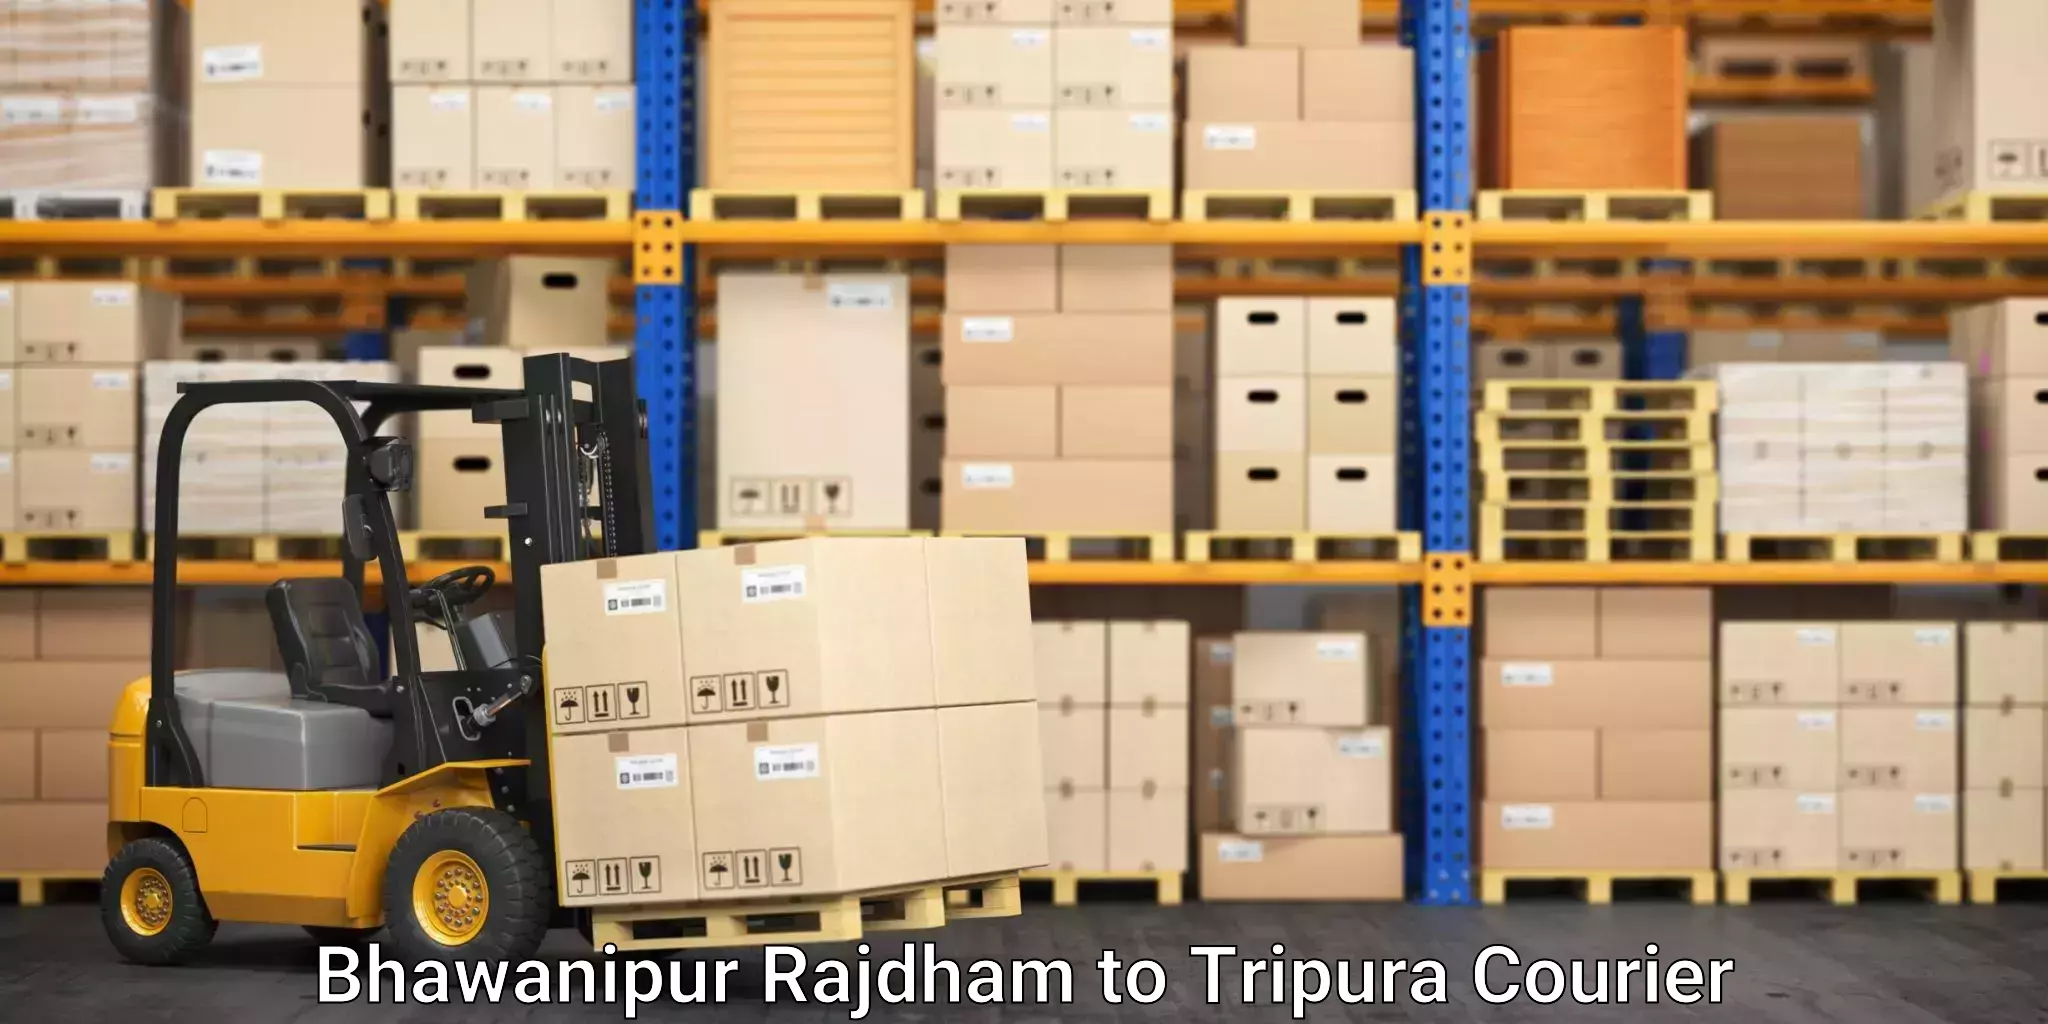 Furniture transport specialists Bhawanipur Rajdham to Kamalpur